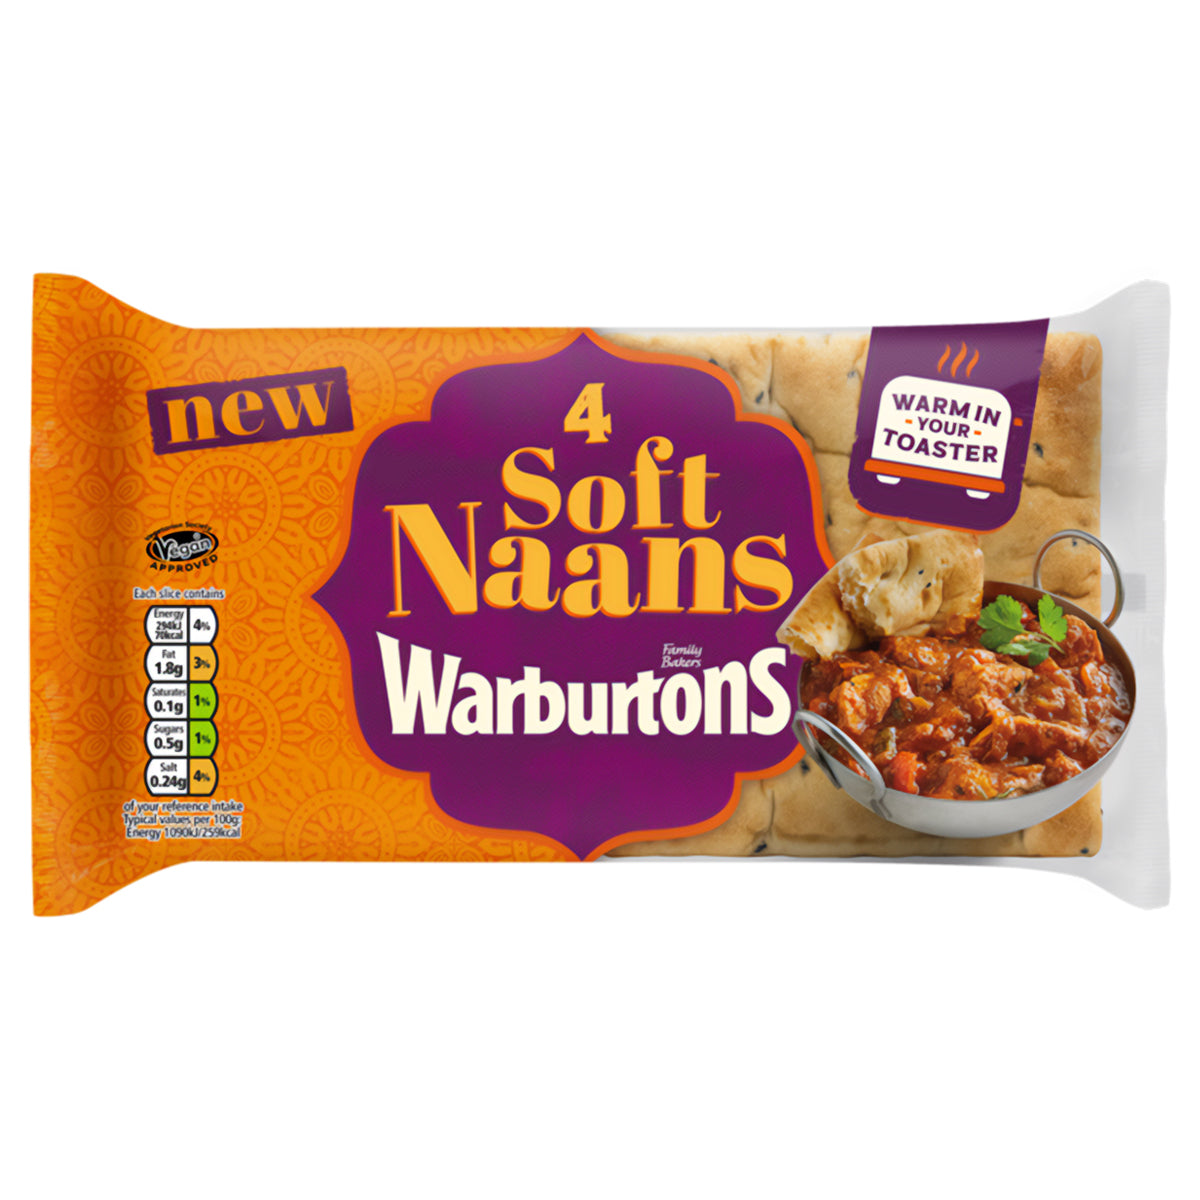 Warburtons - Soft Naans - 4pack Warburtons.